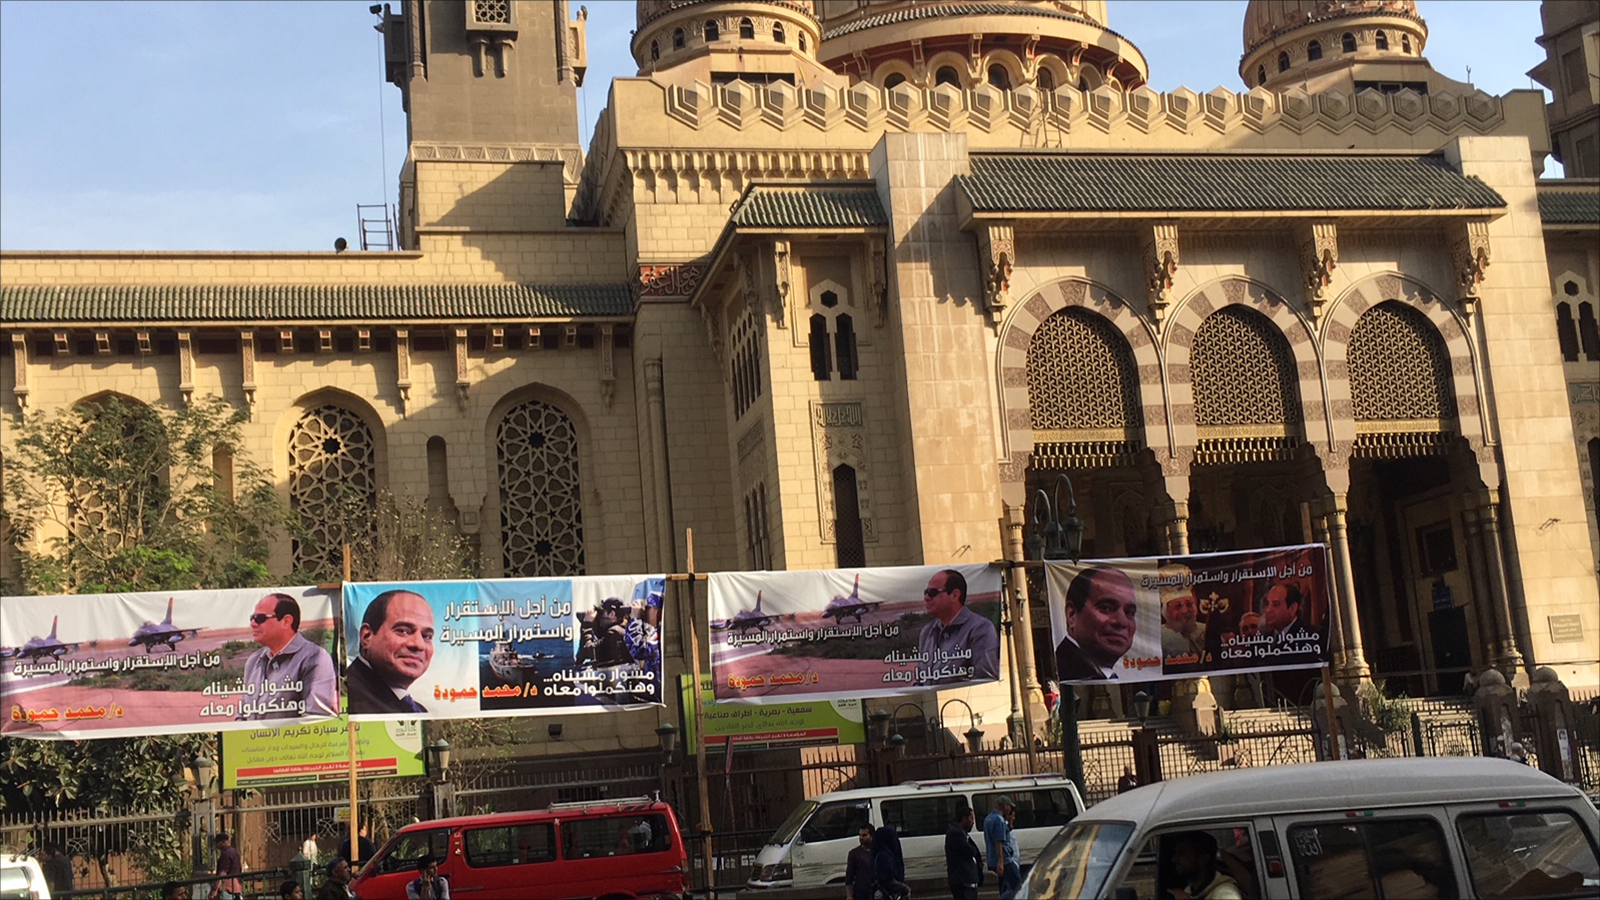 ‪حملة السيسي كثّفت خلال الانتخابات الماضية لافتاتها على أسوار مسجد آل عنان (الفتح حاليا) فيما رآه البعض كيدا متعمدا‬ (مواقع التواصل الإجتماعي)